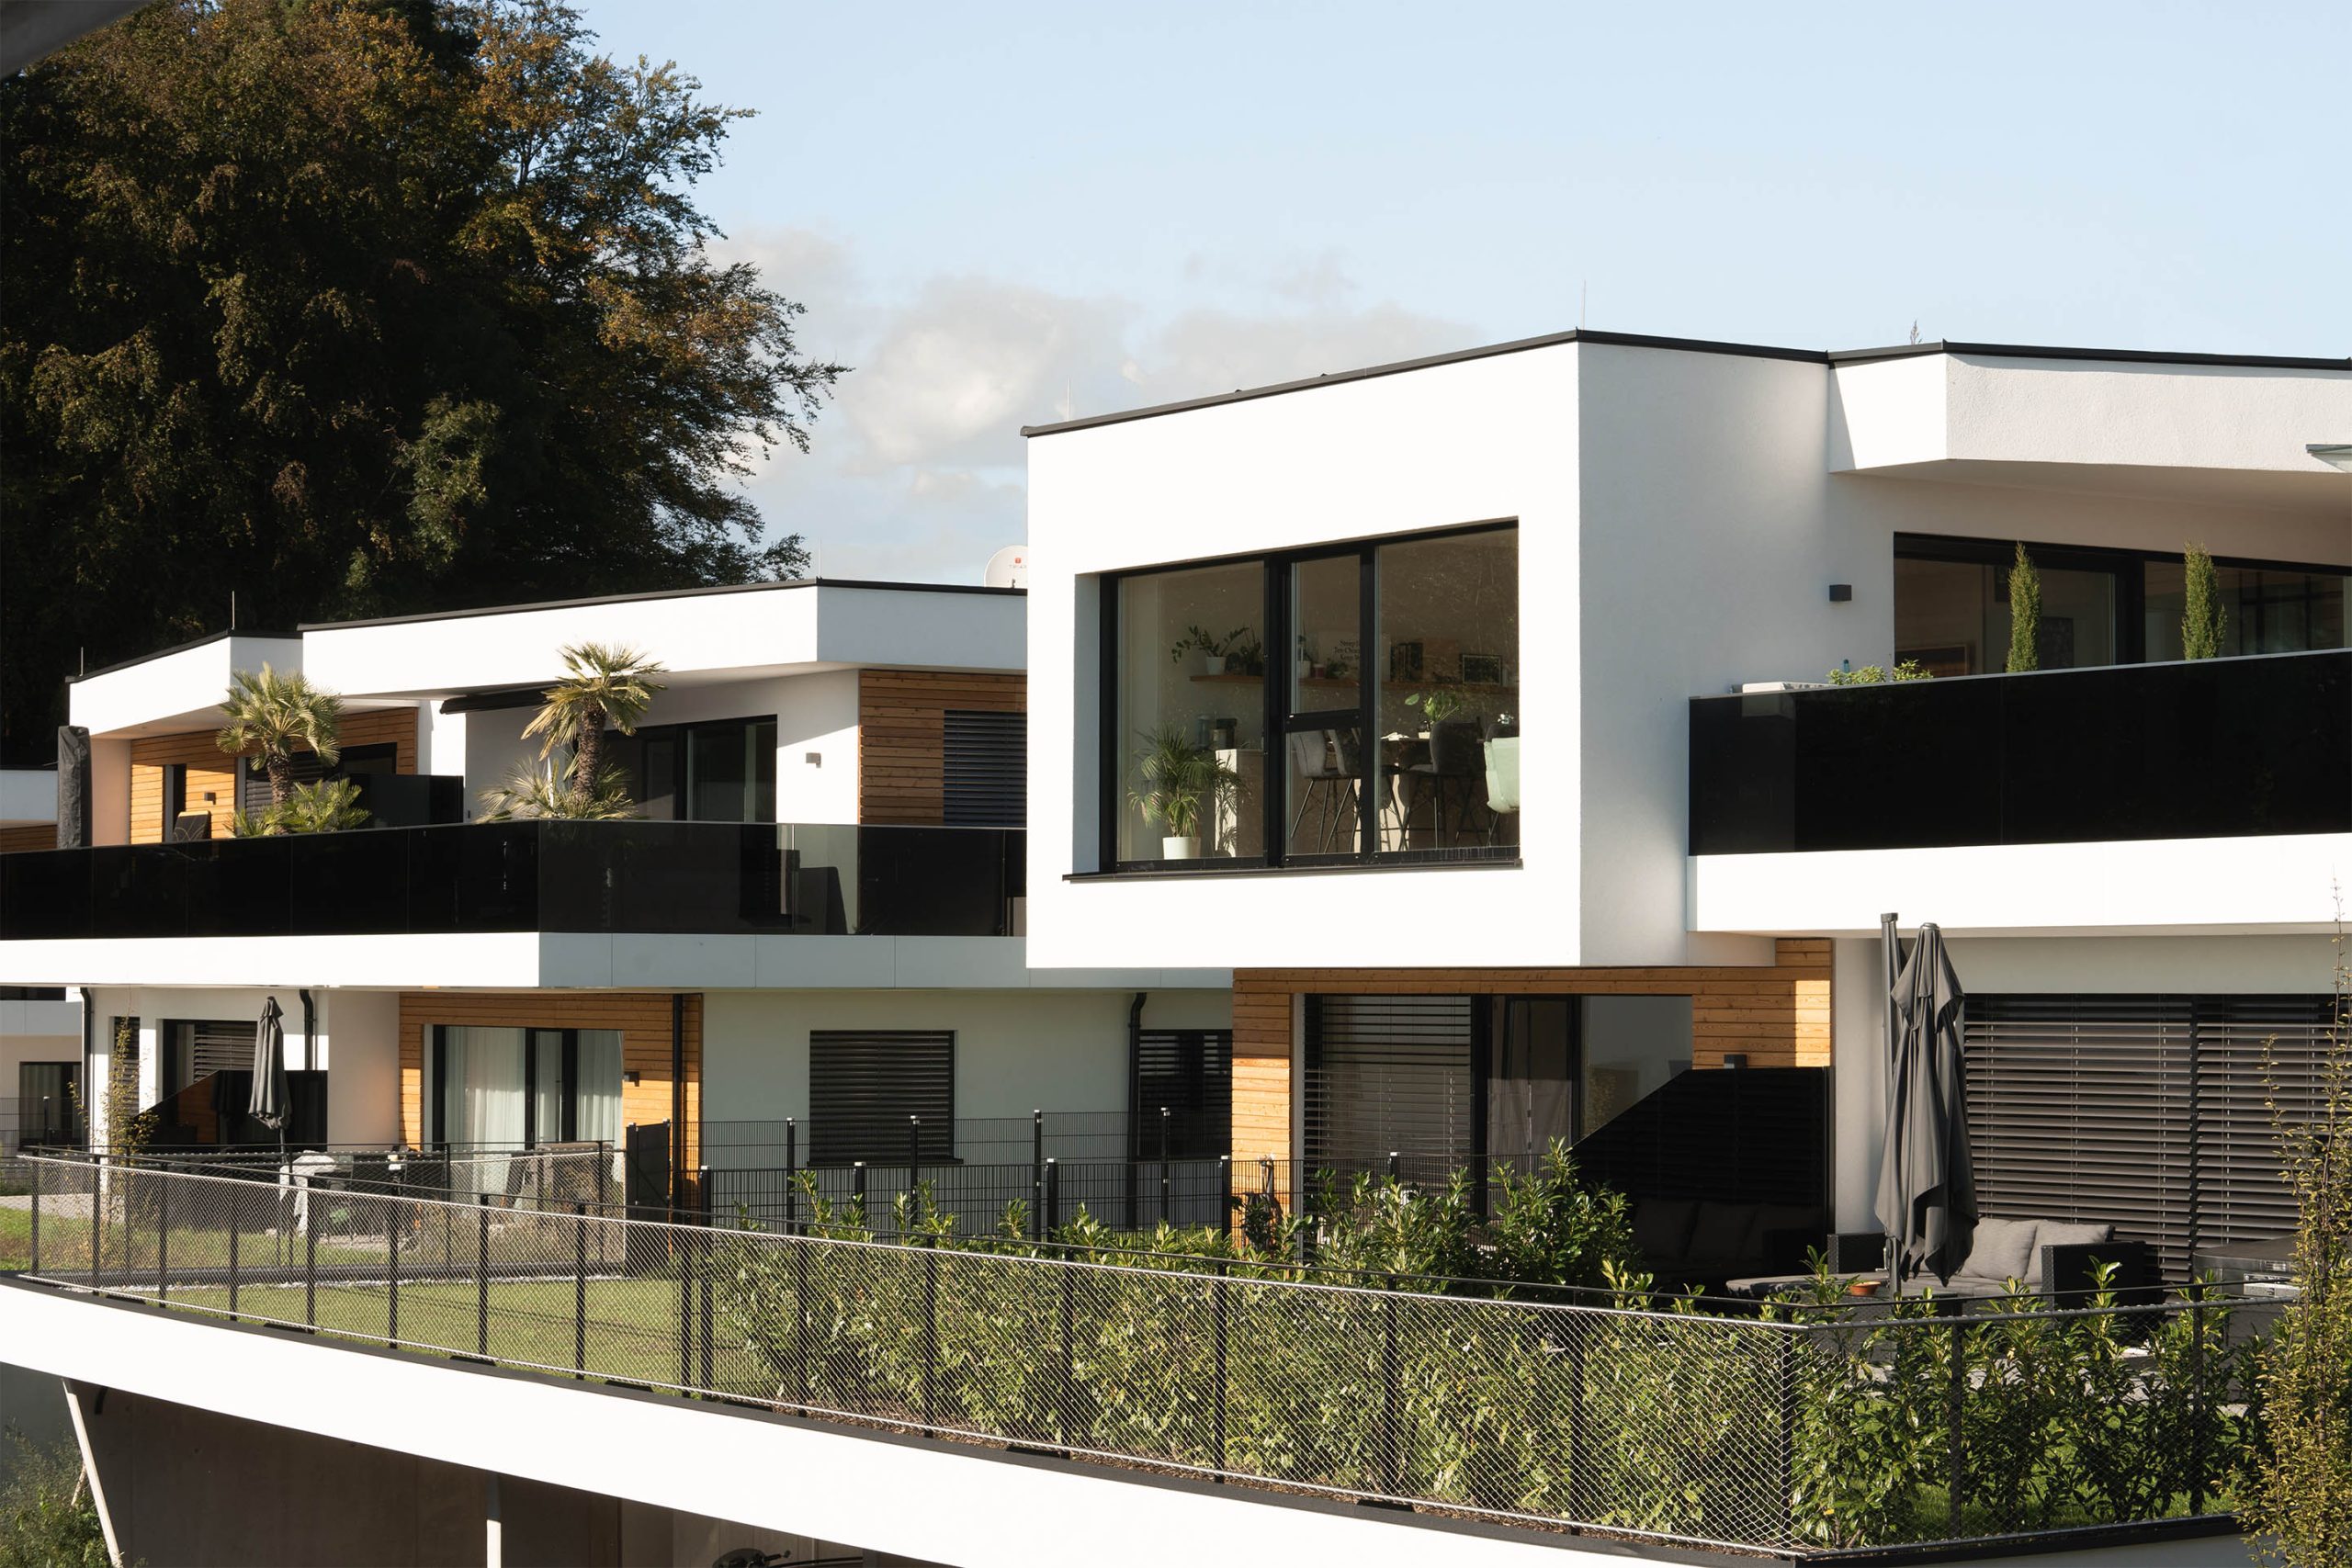 Wohnbauprojekt Panorama Gleisdorf, Referenzprojekt von Arch&Living; Blick auf mehrere Gebäude mit deren Gärten